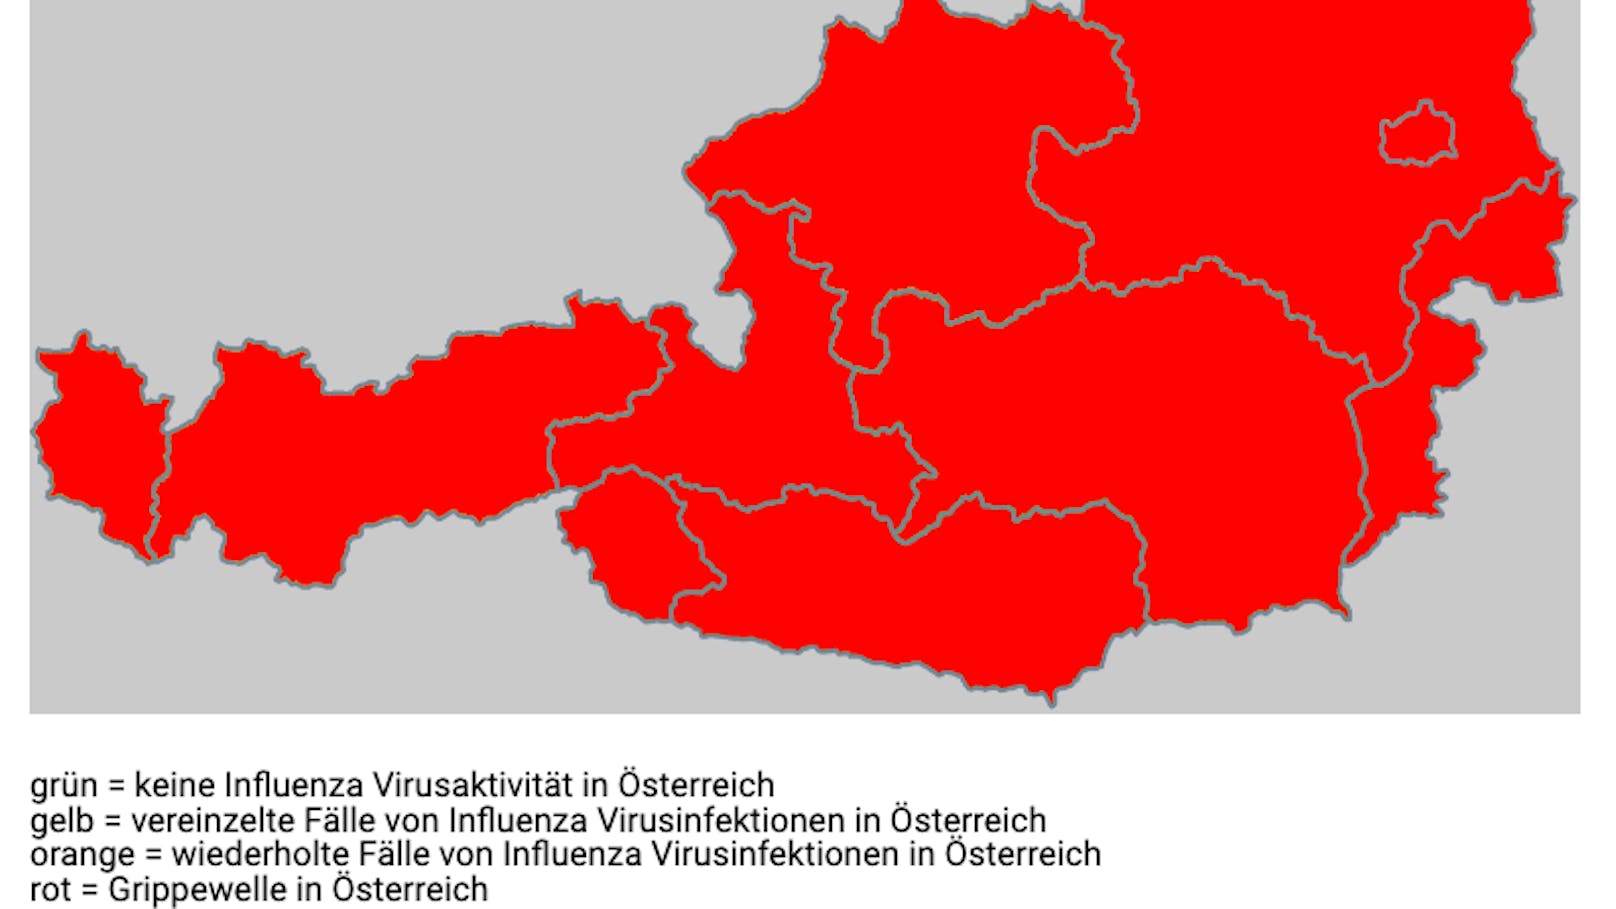 Rotes Wien im roten Österreich. Die Farbe Rot markiert die Bereiche, in denen die Grippewelle akut ist: Flächendeckend.